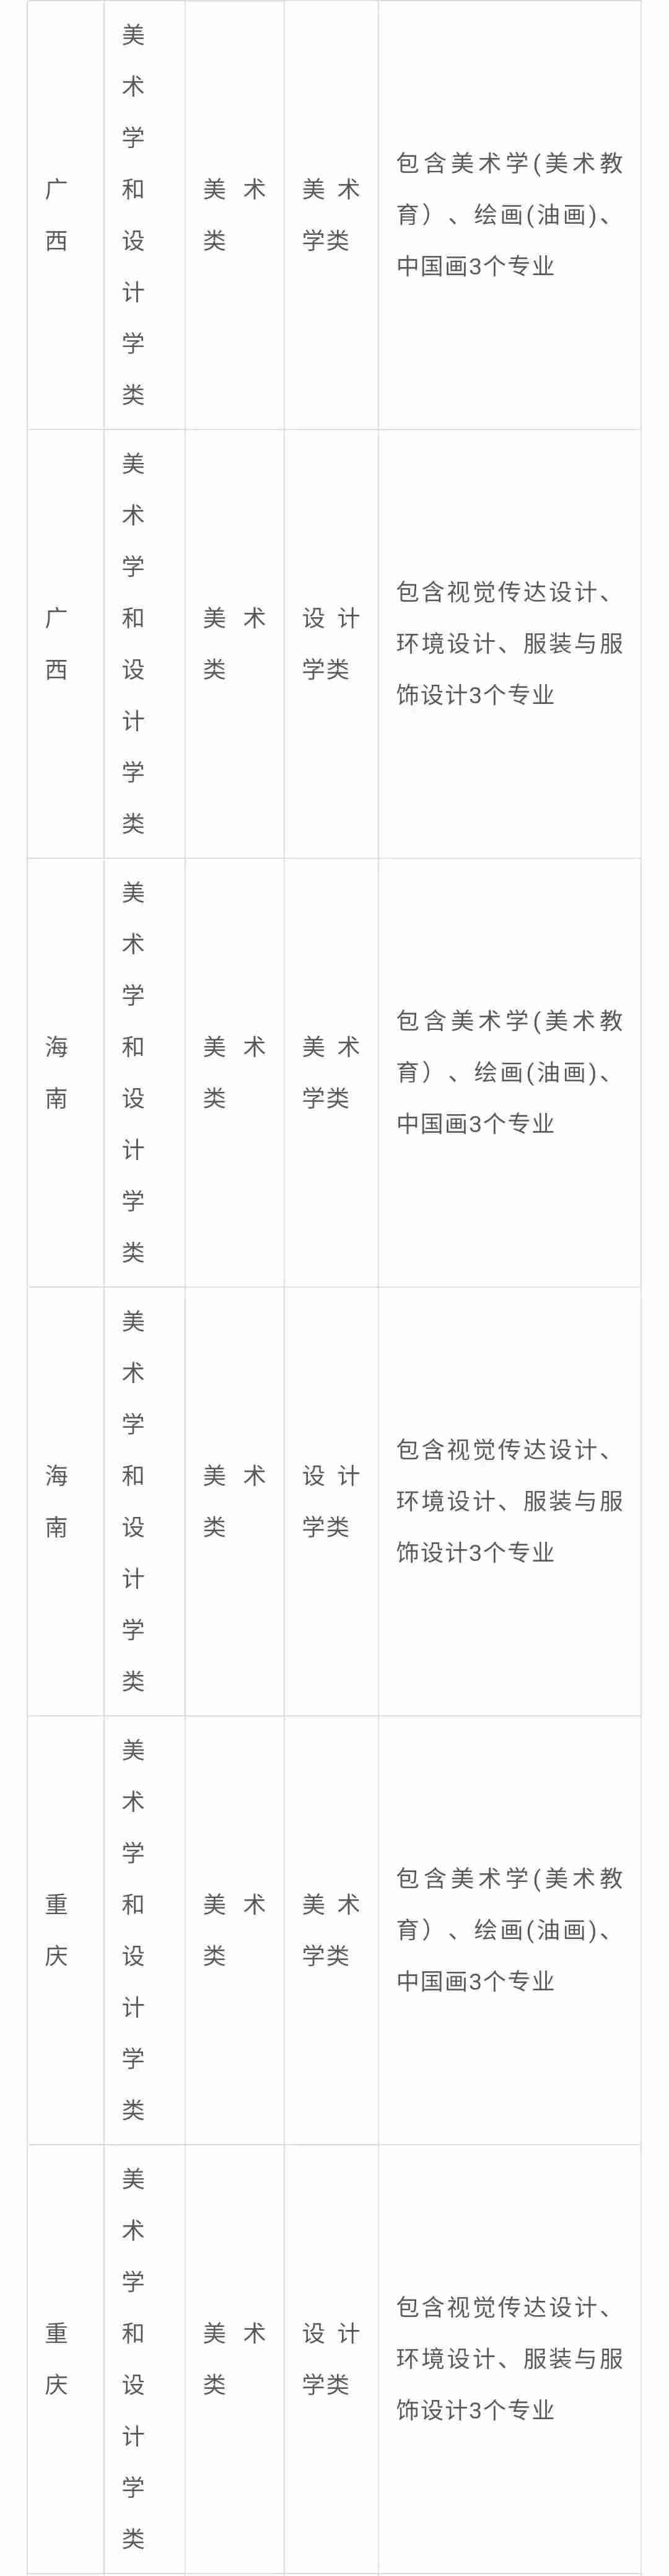 北京画室整理|中央民族大学2021年艺术类专业与各省统考科类对应表,09